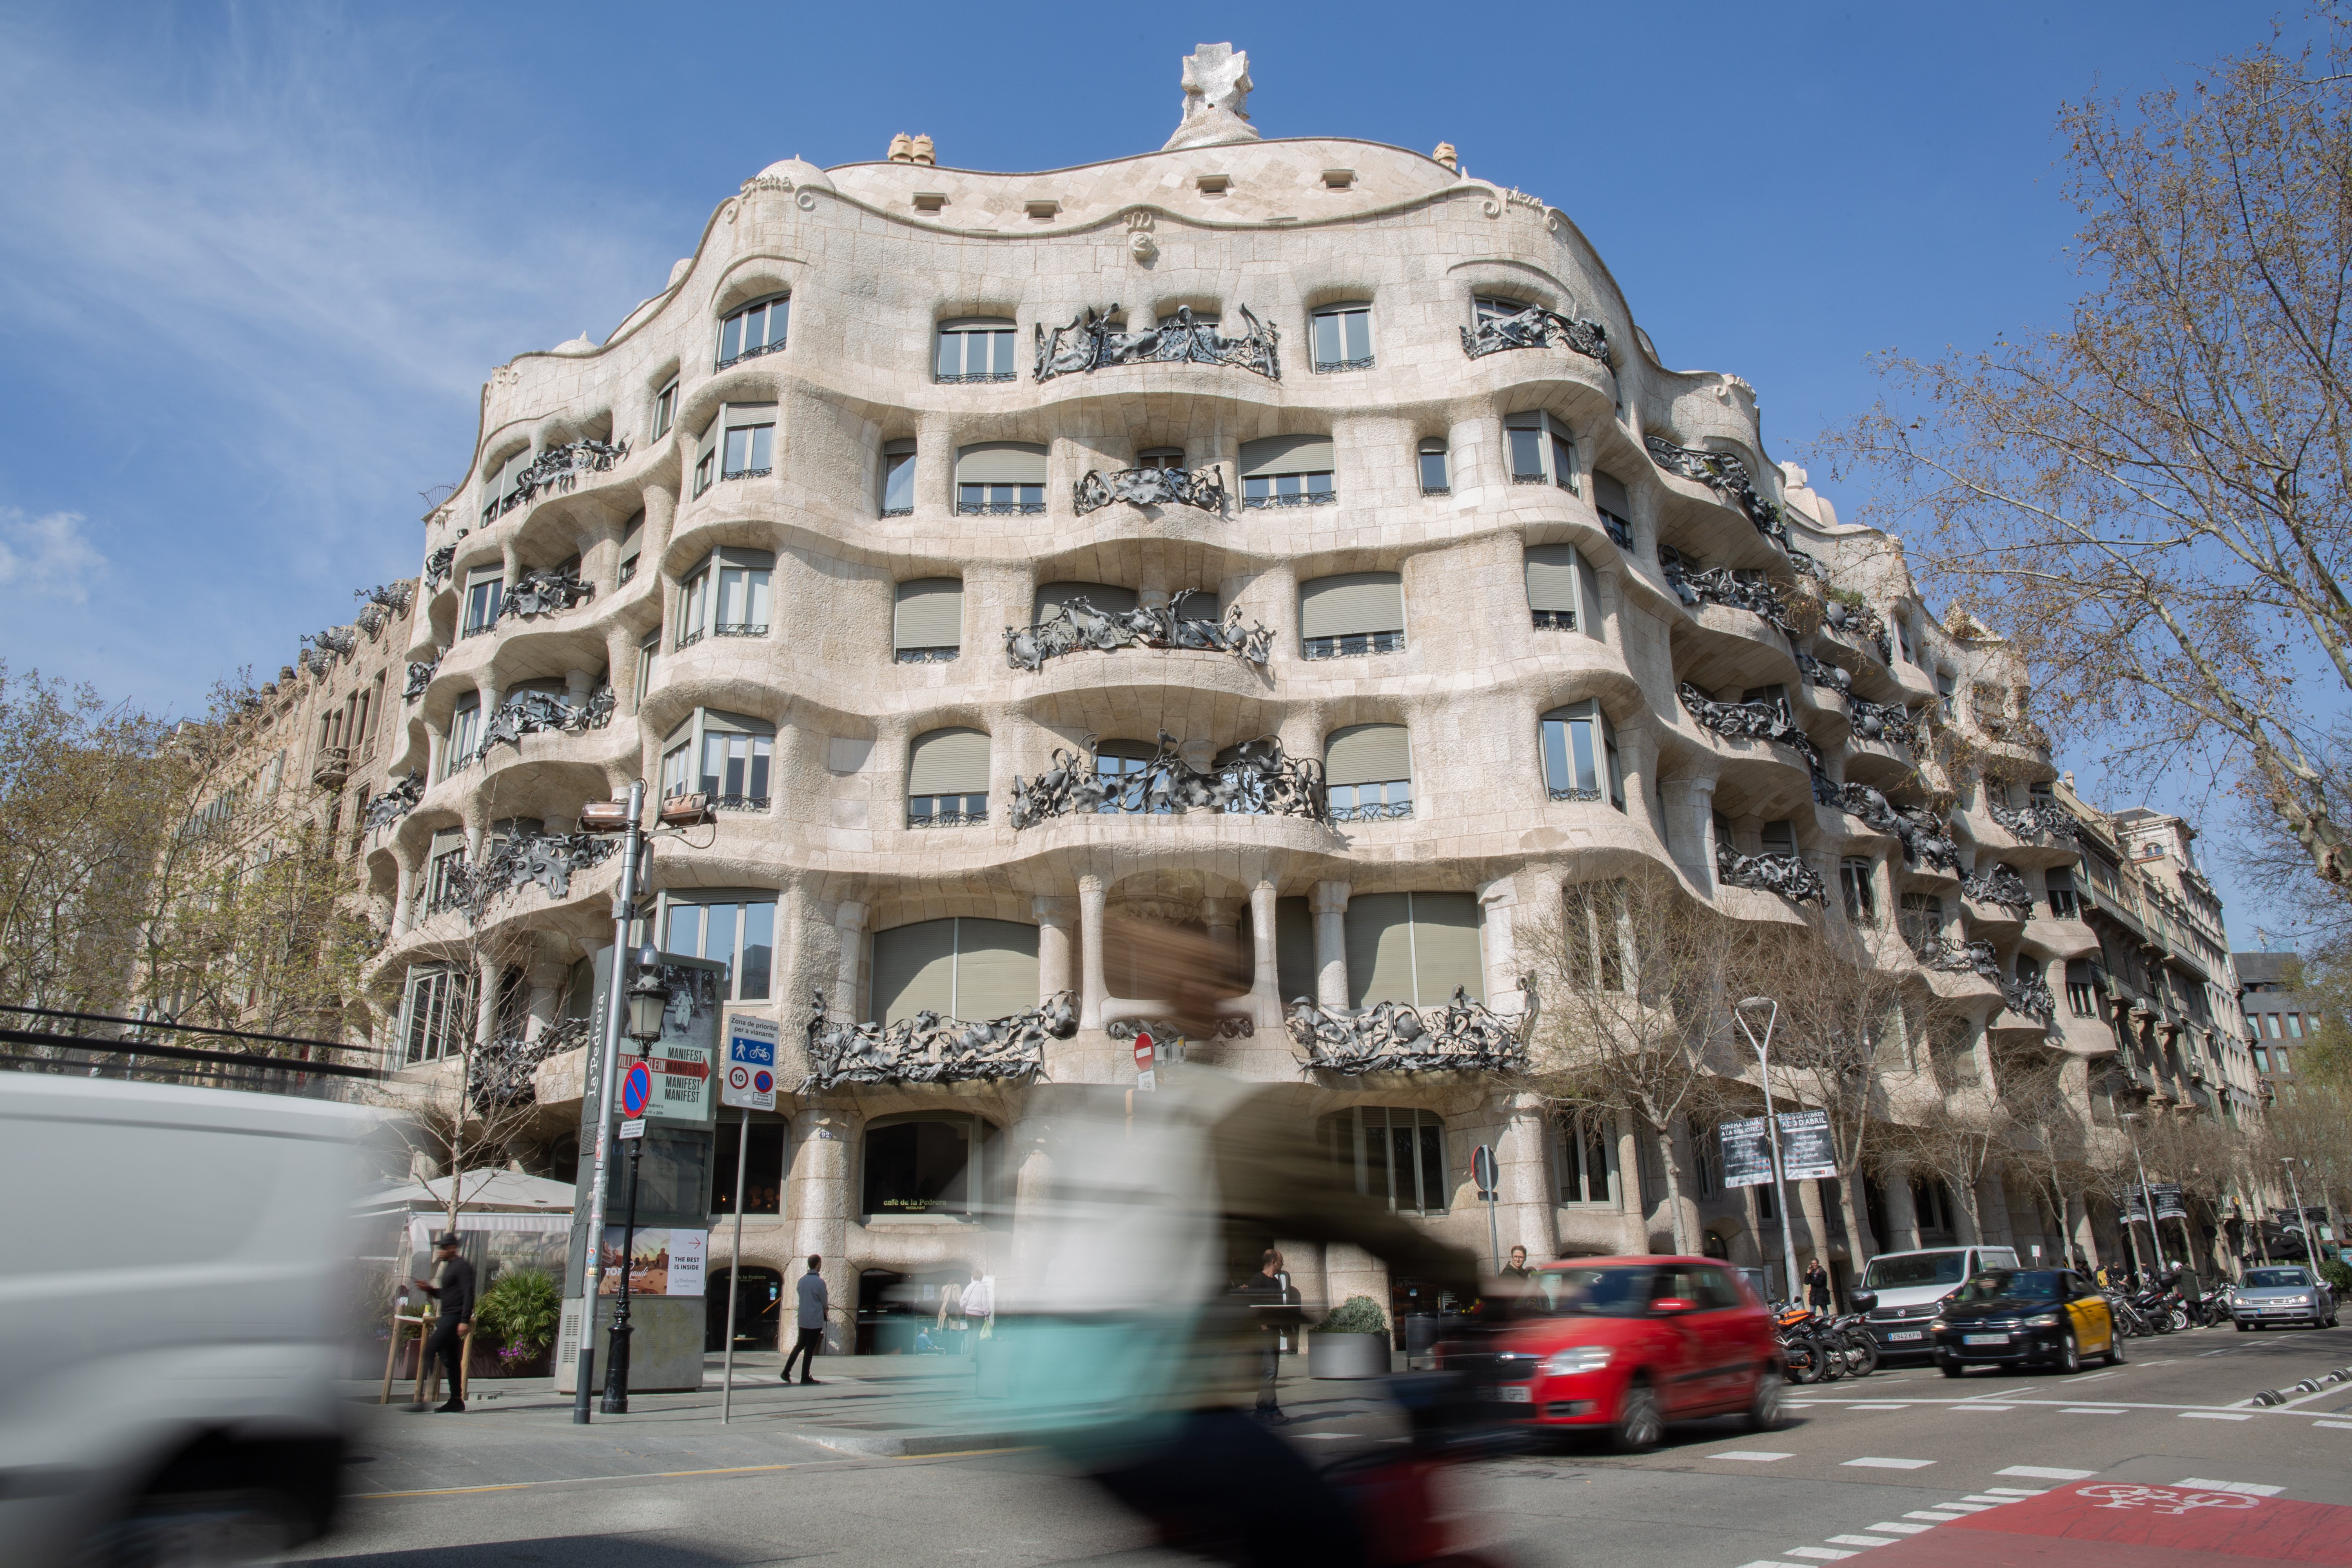 Ponen a la venta por 10.000 euros cuatro puertas que podrían ser de Gaudí